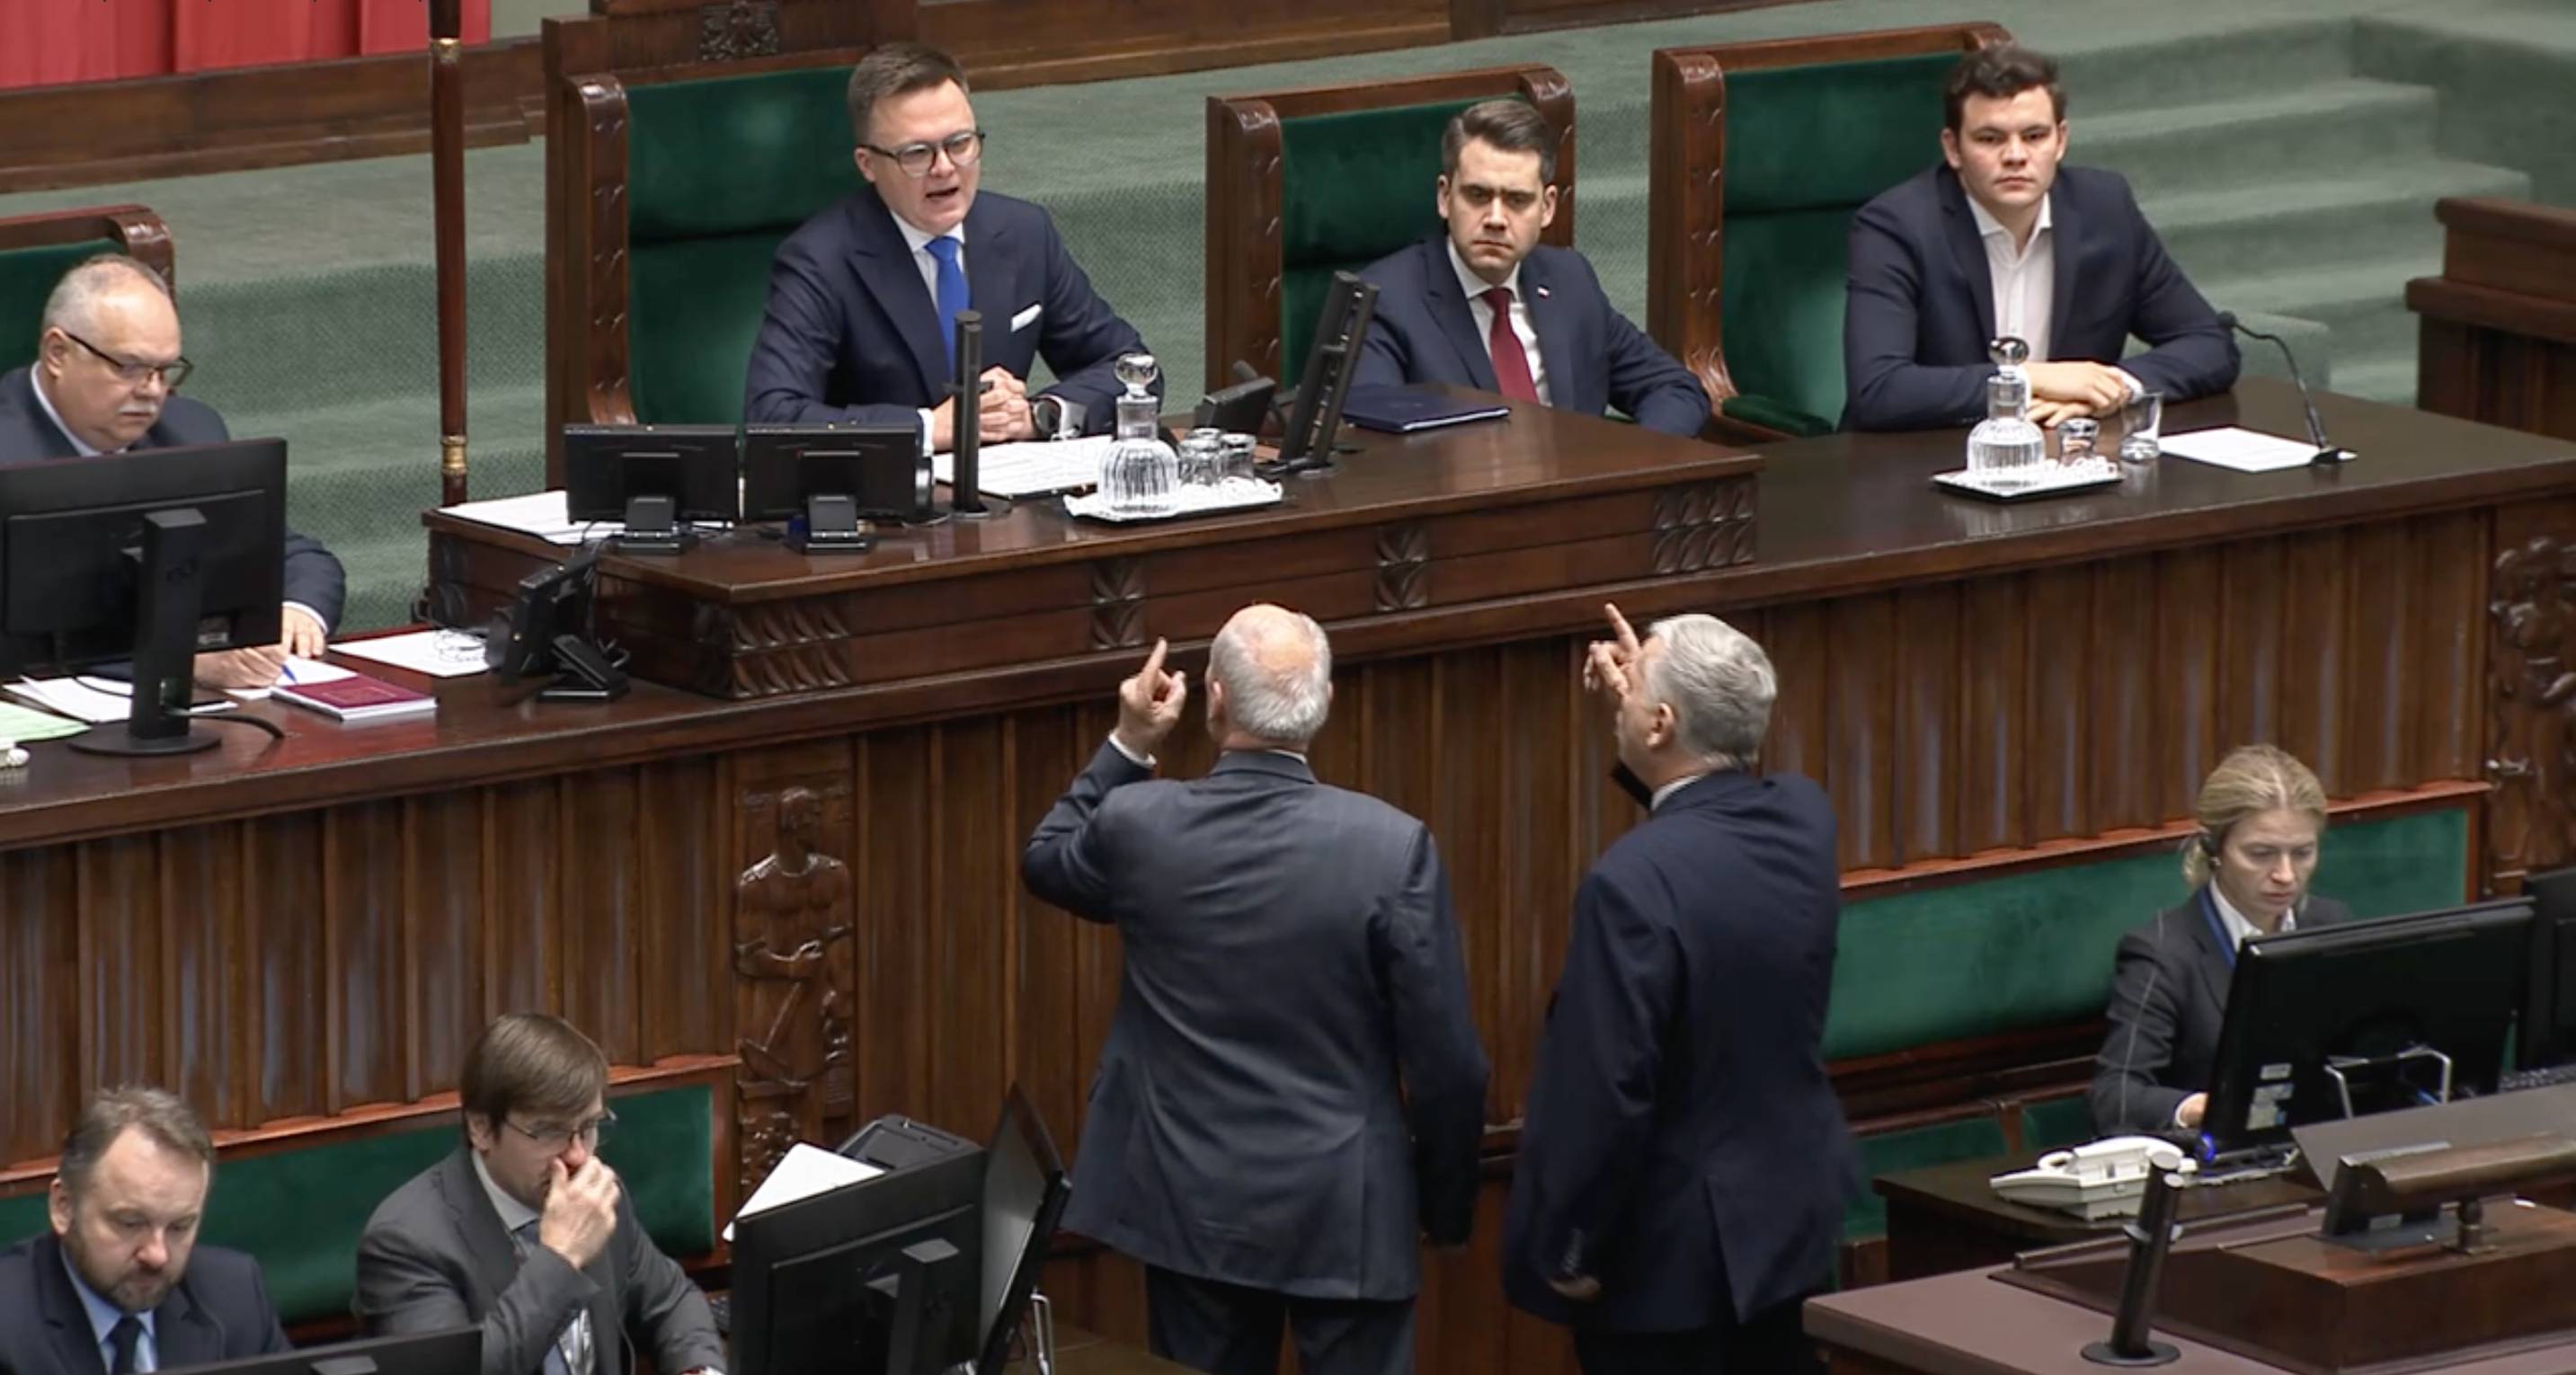 Posłowie PiS Antoni Macierewicz i Marek Suski wygrażają Marszałkowi Sejmu Szymonowi Hołowni